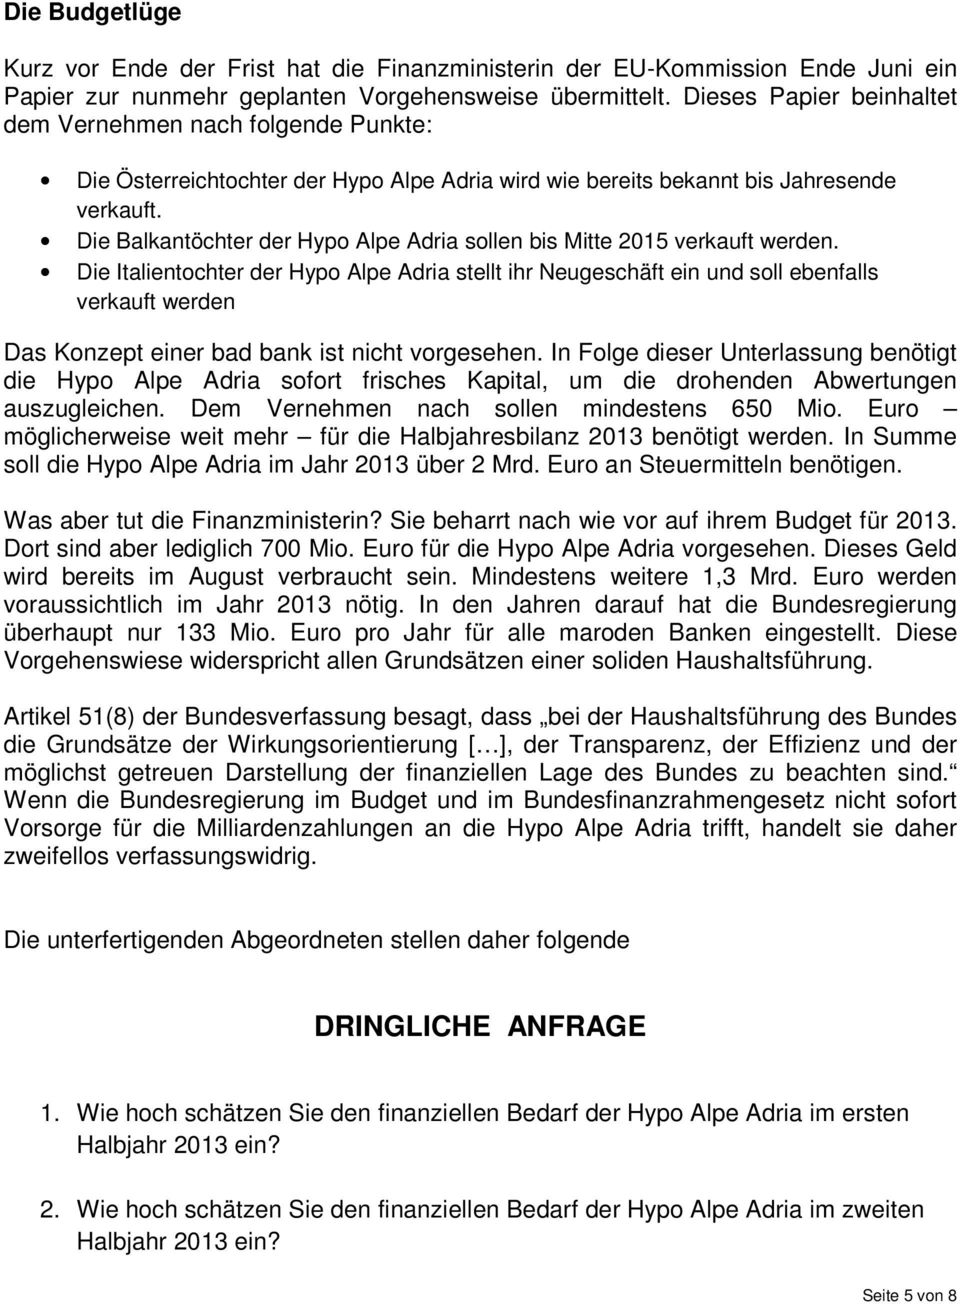 Die Balkantöchter der Hypo Alpe Adria sollen bis Mitte 2015 verkauft werden.